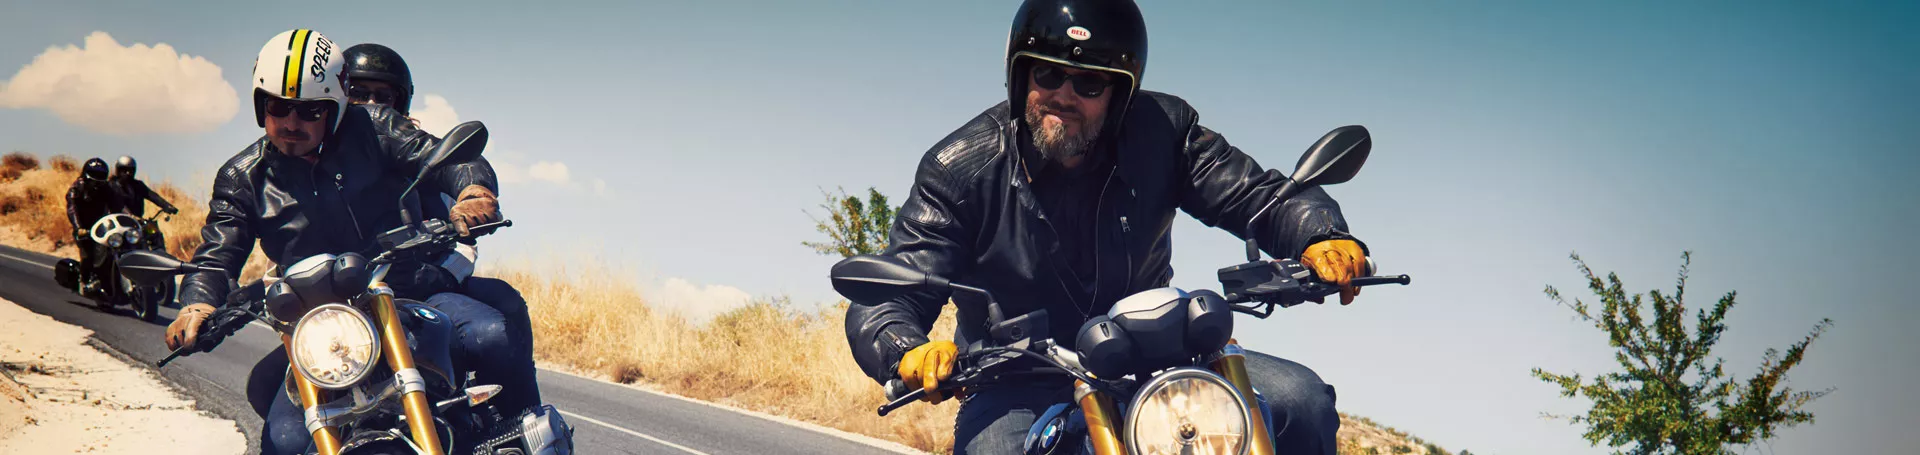 Wenn das Bike Beine bekommt: Diebstahlschutz für Motorräder